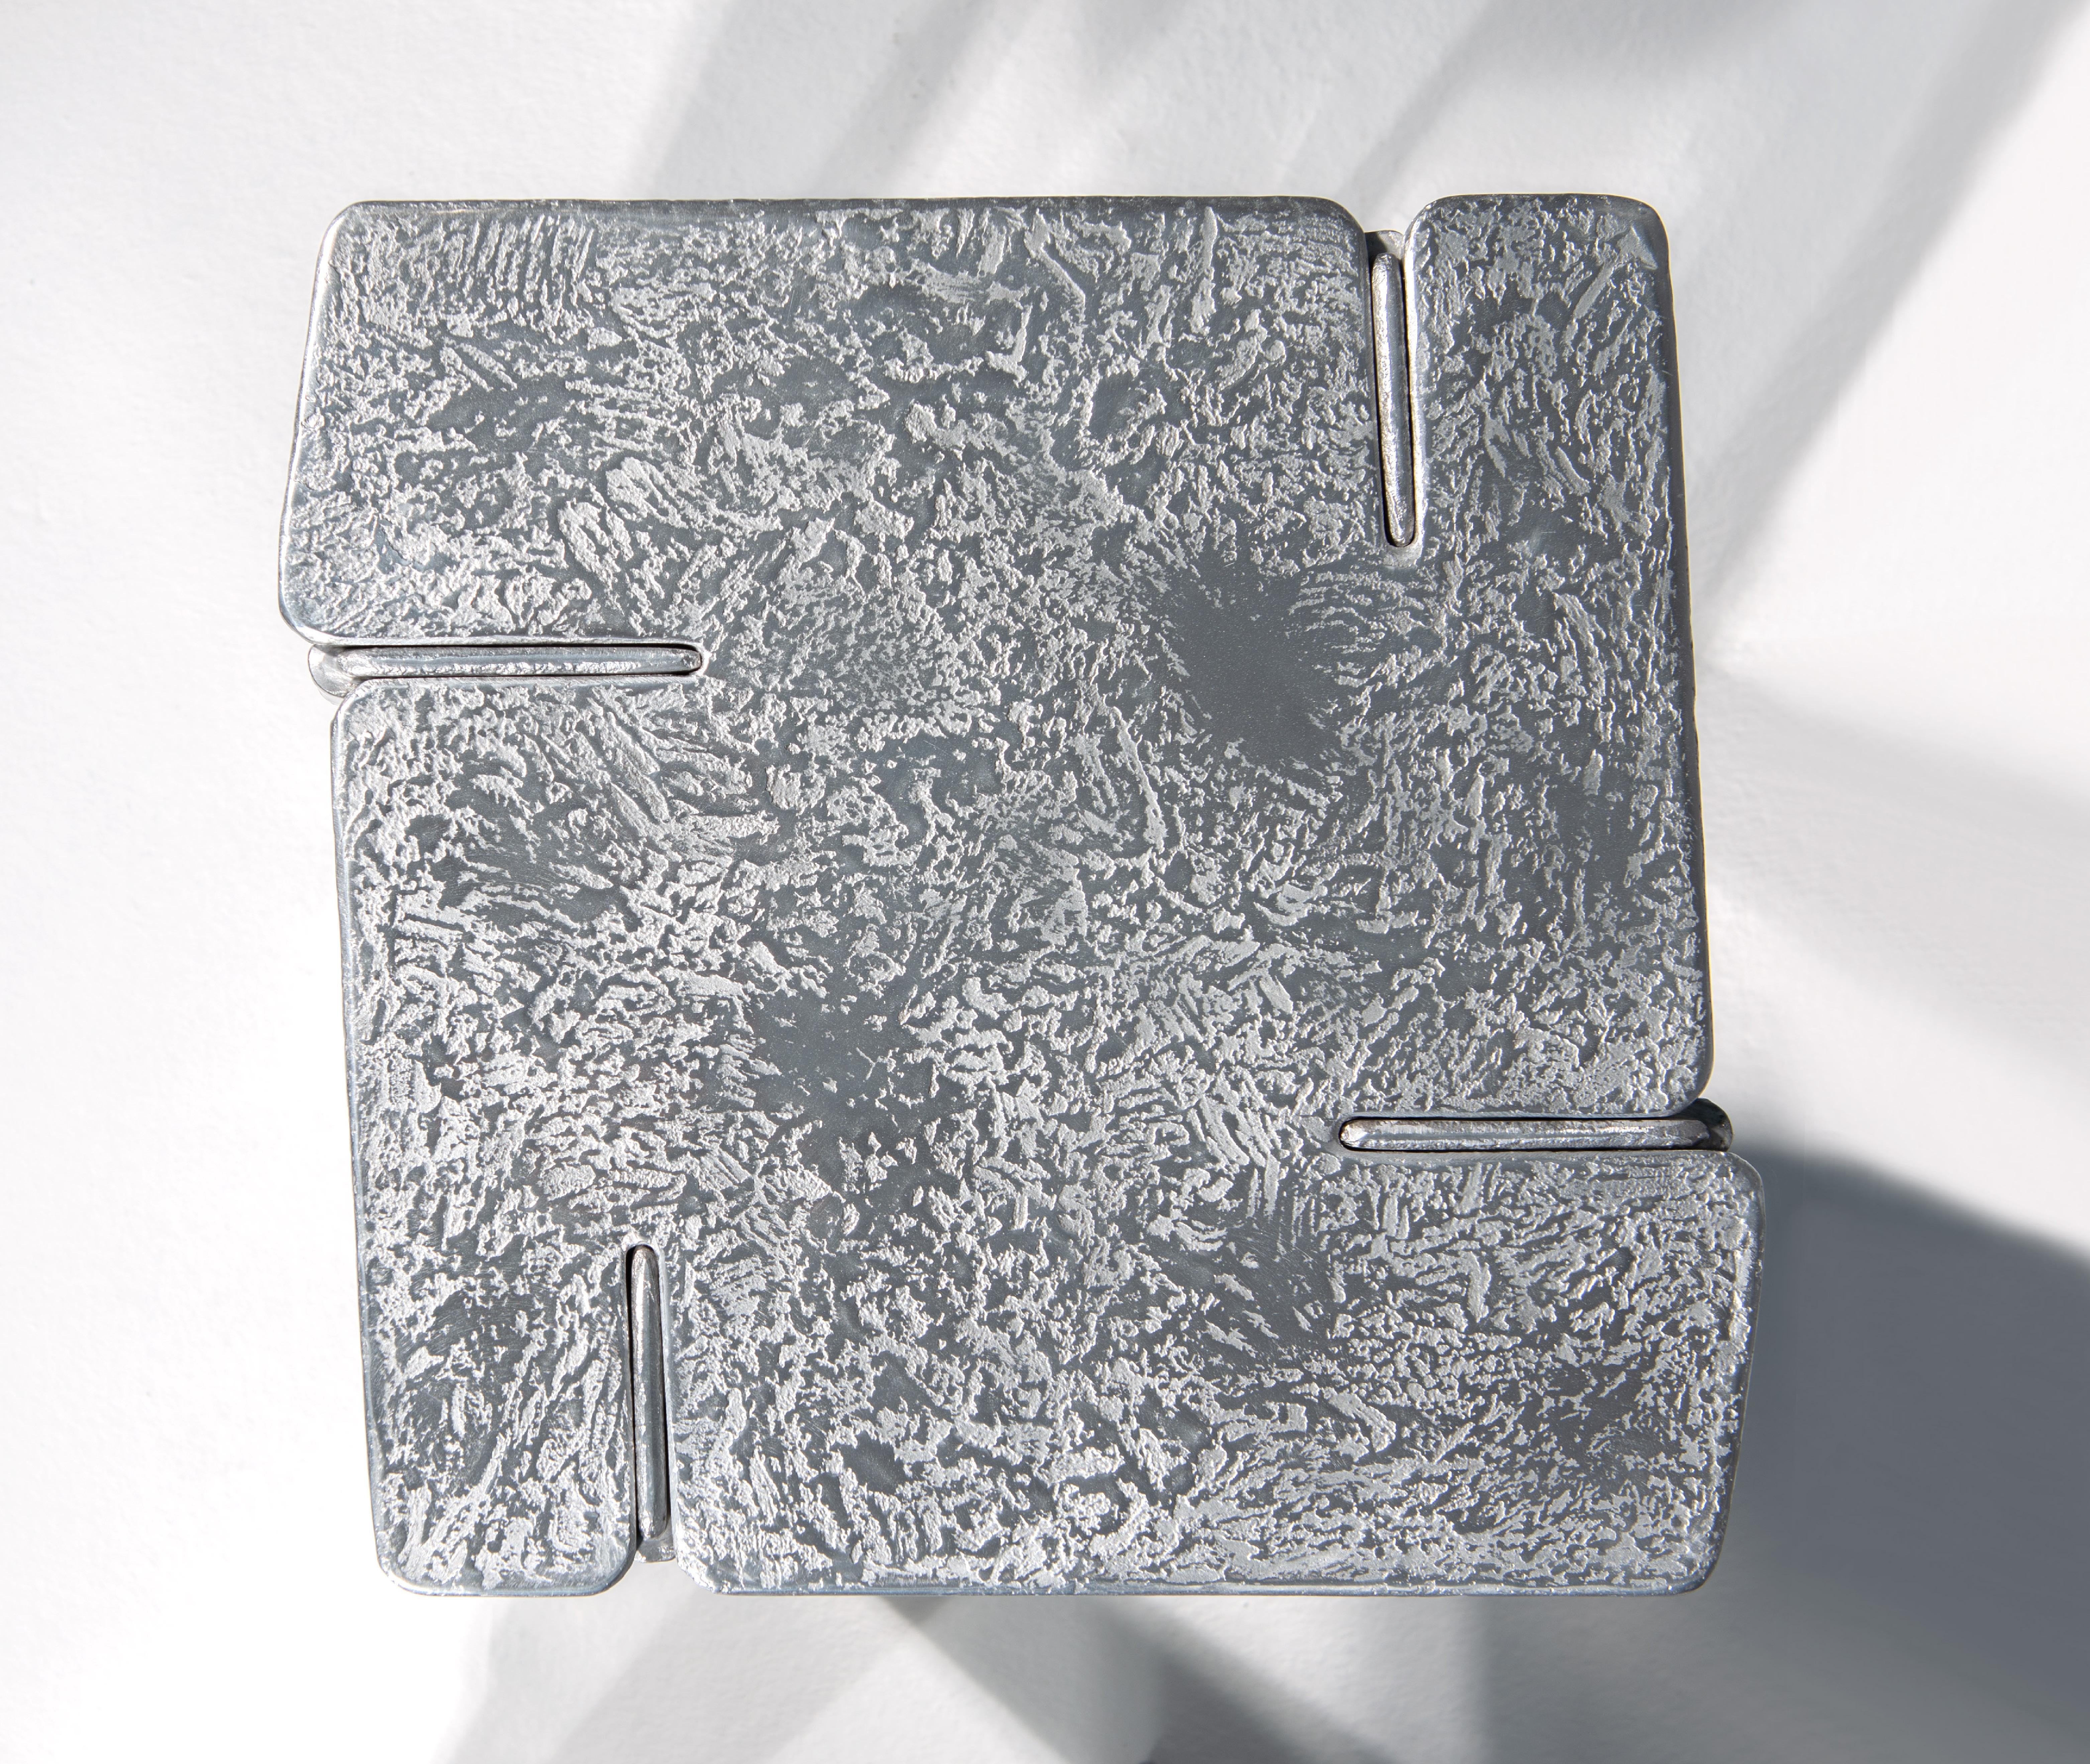 Der Couchtisch Overlap ist komplett aus Aluminium gefertigt. Es wird durch Gießen des Aluminiums in spezielle Formen aus Sand gewonnen. Das skulpturale Aussehen der Oberfläche und die Verwendung von Metall als Rohmaterial machen diesen Gegenstand zu